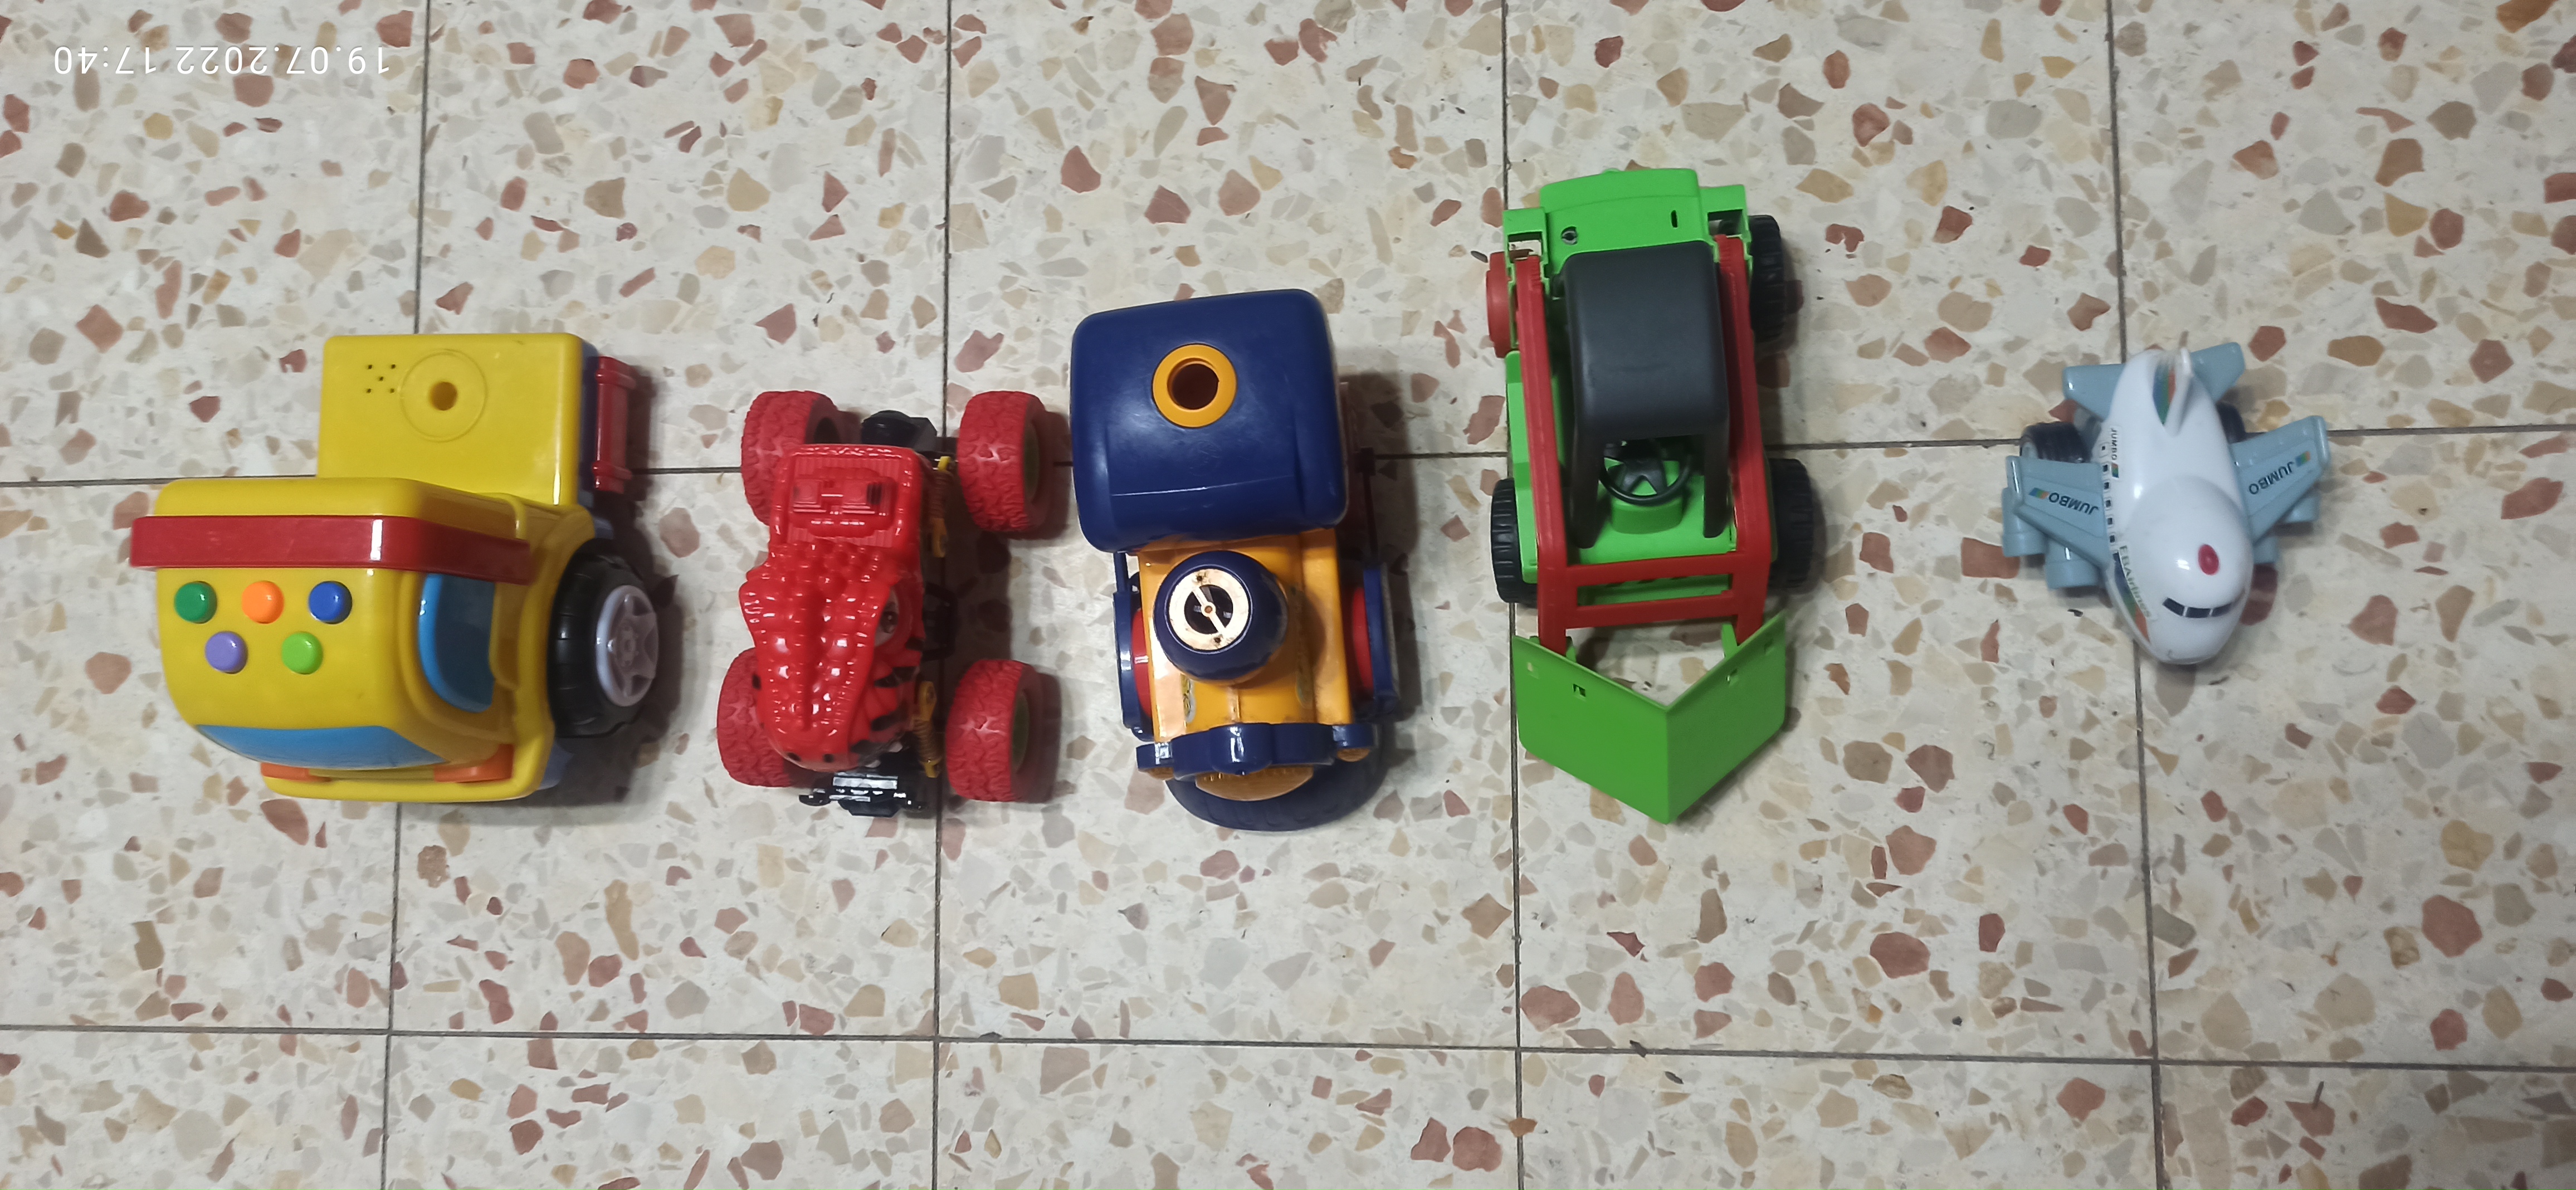 תמונה 1 ,4 מכוניות  1 מטוס גמבו למכירה ביבנה צעצועי ילדים  מכוניות